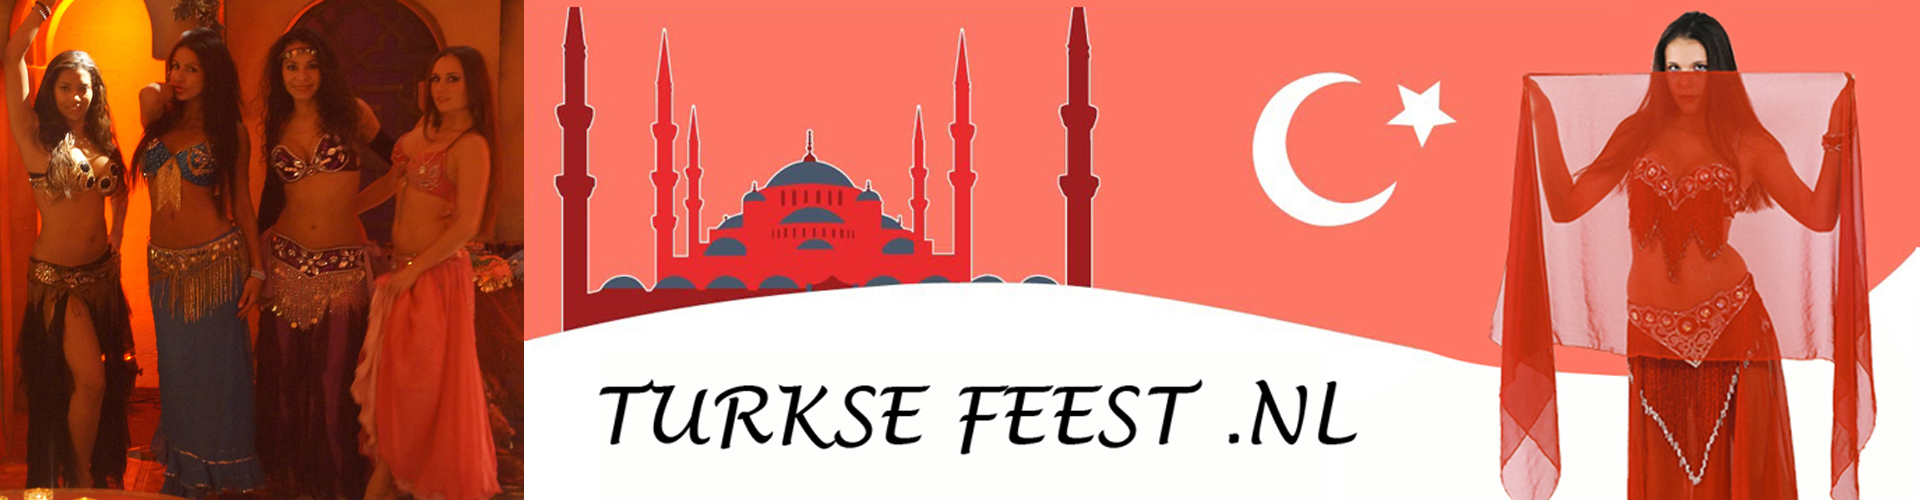 Turkse sfeer feest